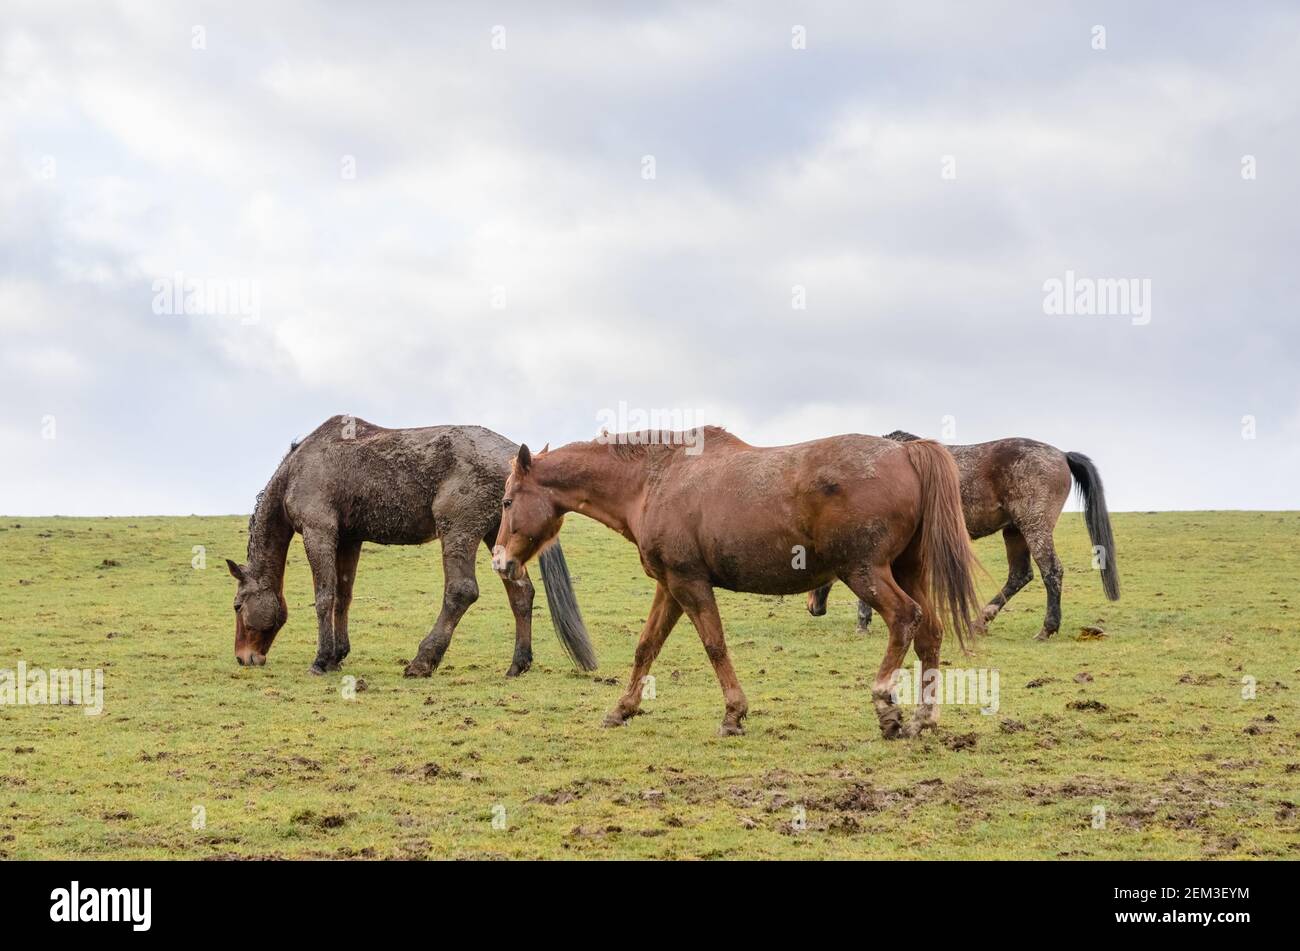 Cavalli purosangue domestici bruni (Equus ferus caballus), in piedi e pascolando su un pascolo in campagna, pelliccia fangosa, Germania, Europa occidentale Foto Stock